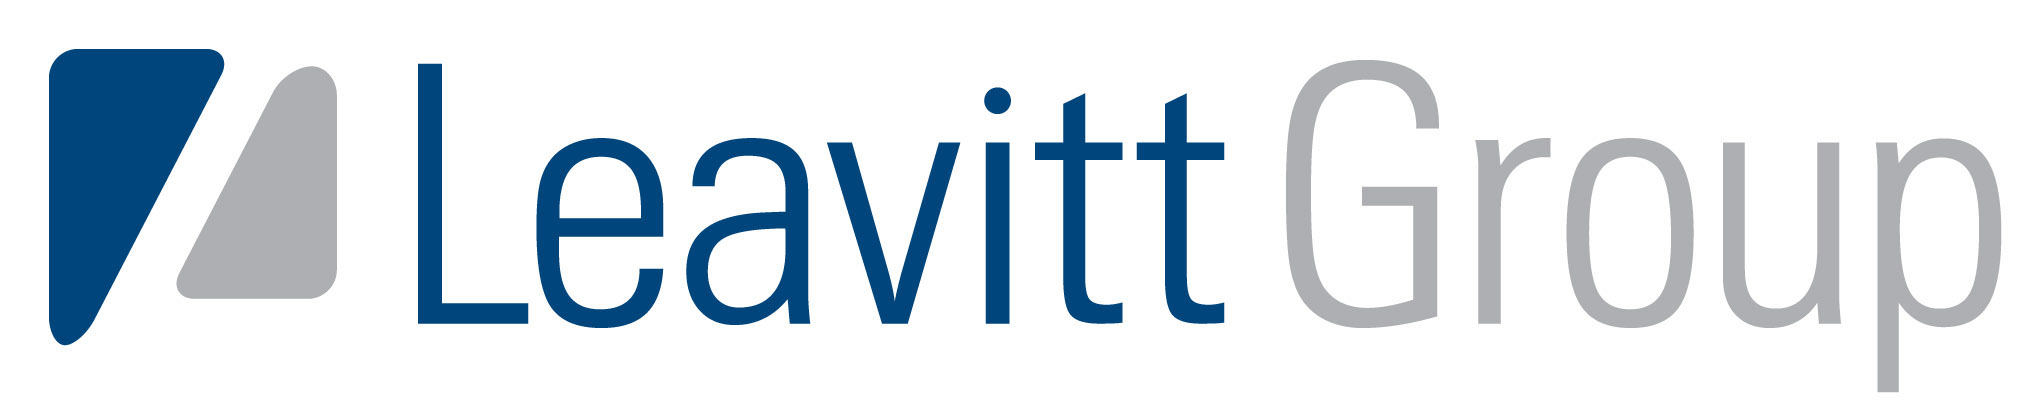 Leavitt Group Logo